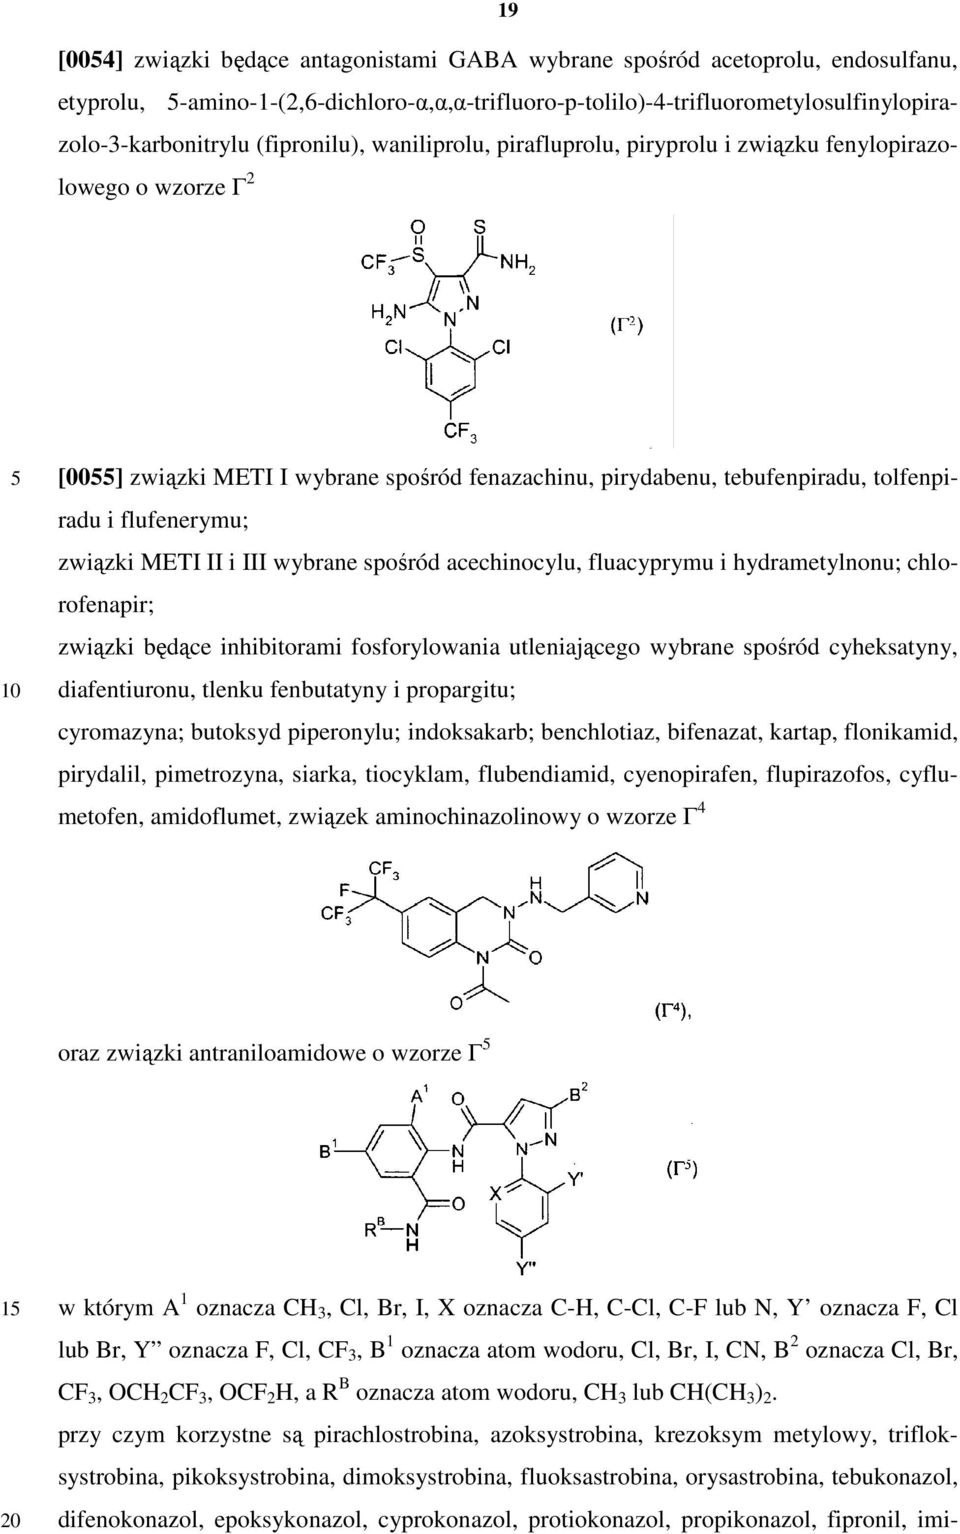 związki METI II i III wybrane spośród acechinocylu, fluacyprymu i hydrametylnonu; chlorofenapir; związki będące inhibitorami fosforylowania utleniającego wybrane spośród cyheksatyny, diafentiuronu,